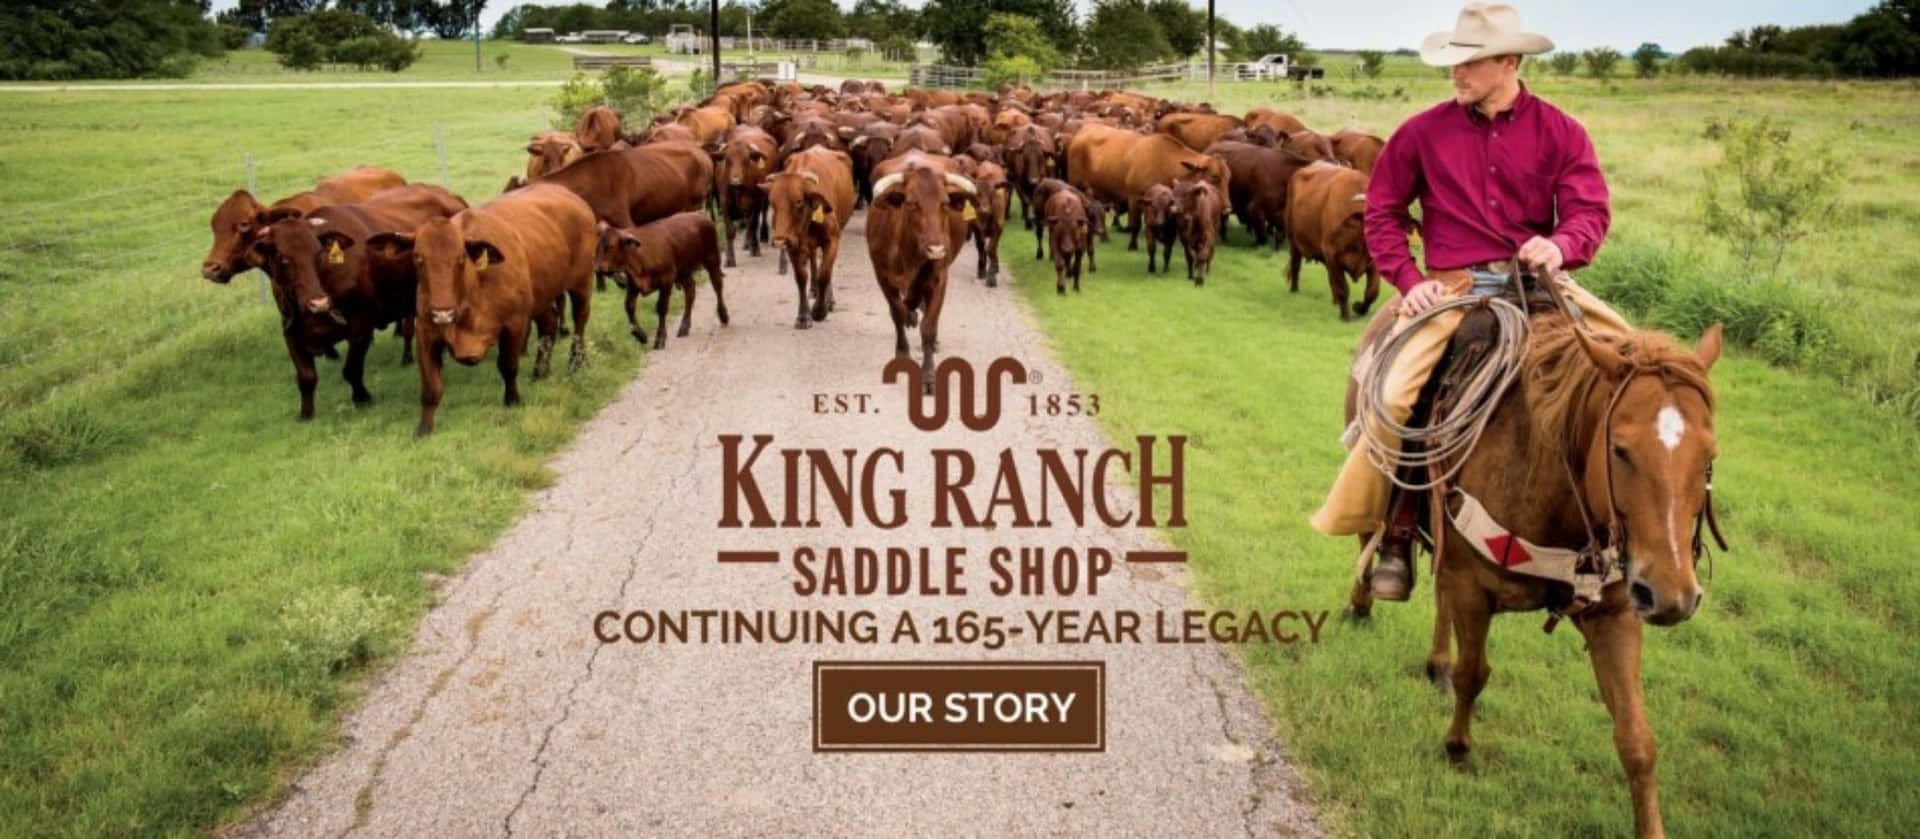 Imágenes De King Ranch Texas